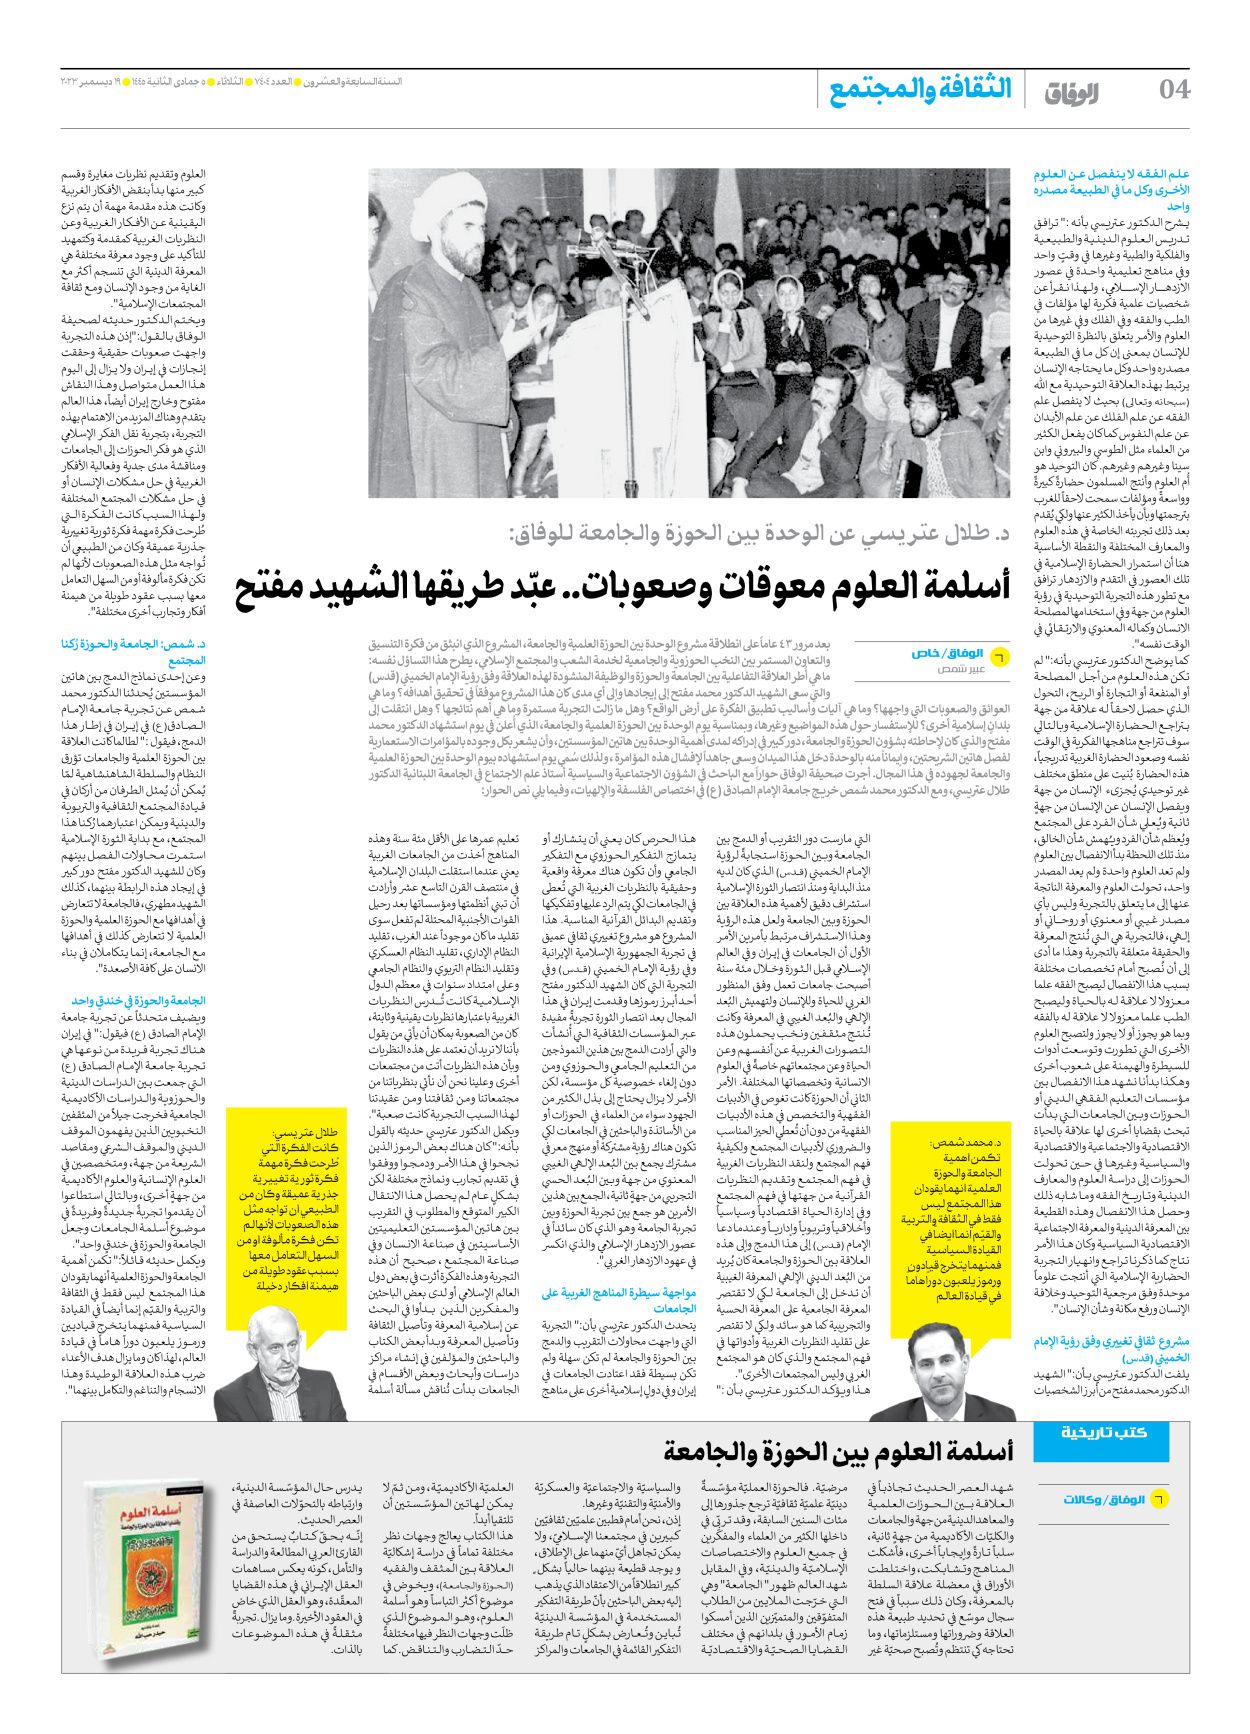 صحیفة ایران الدولیة الوفاق - العدد سبعة آلاف وأربعمائة وأربعة - ١٩ ديسمبر ٢٠٢٣ - الصفحة ٤